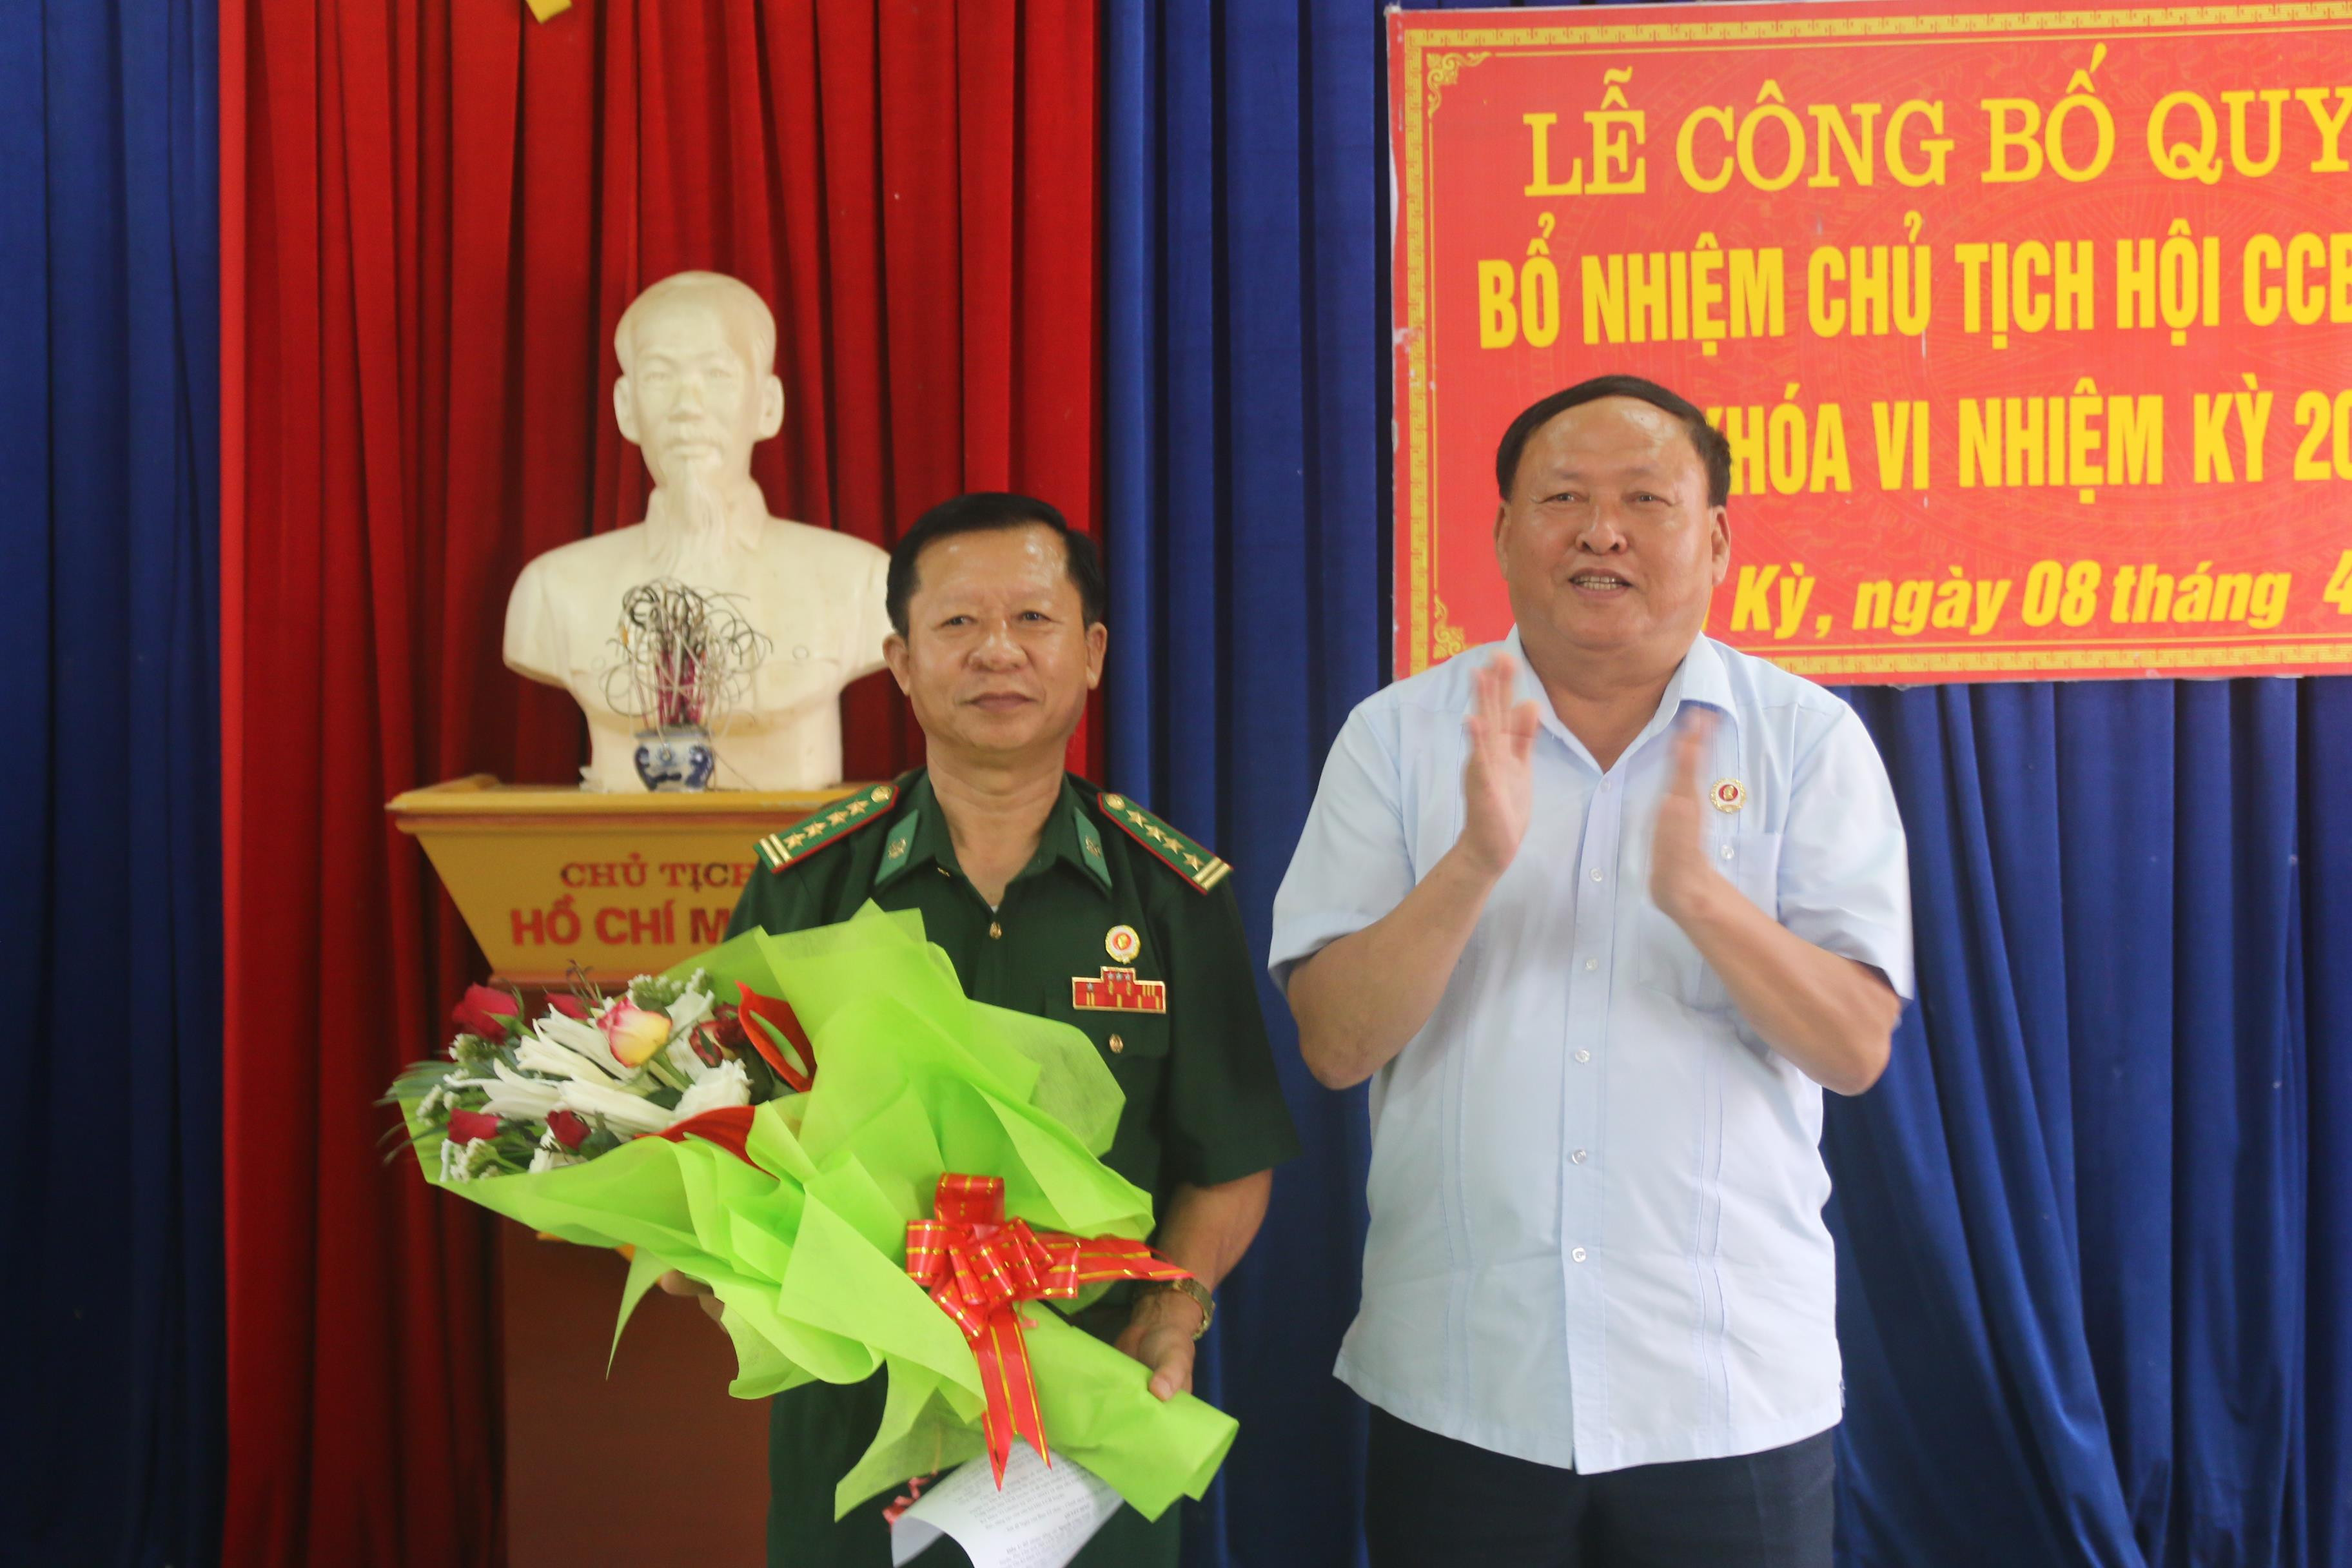 Đồng chí Nguyễn Đình Minh-Chủ tịch HCCB tỉnh trao quyết định và tặng hoa cho đồng chí Nguyễn Công Long